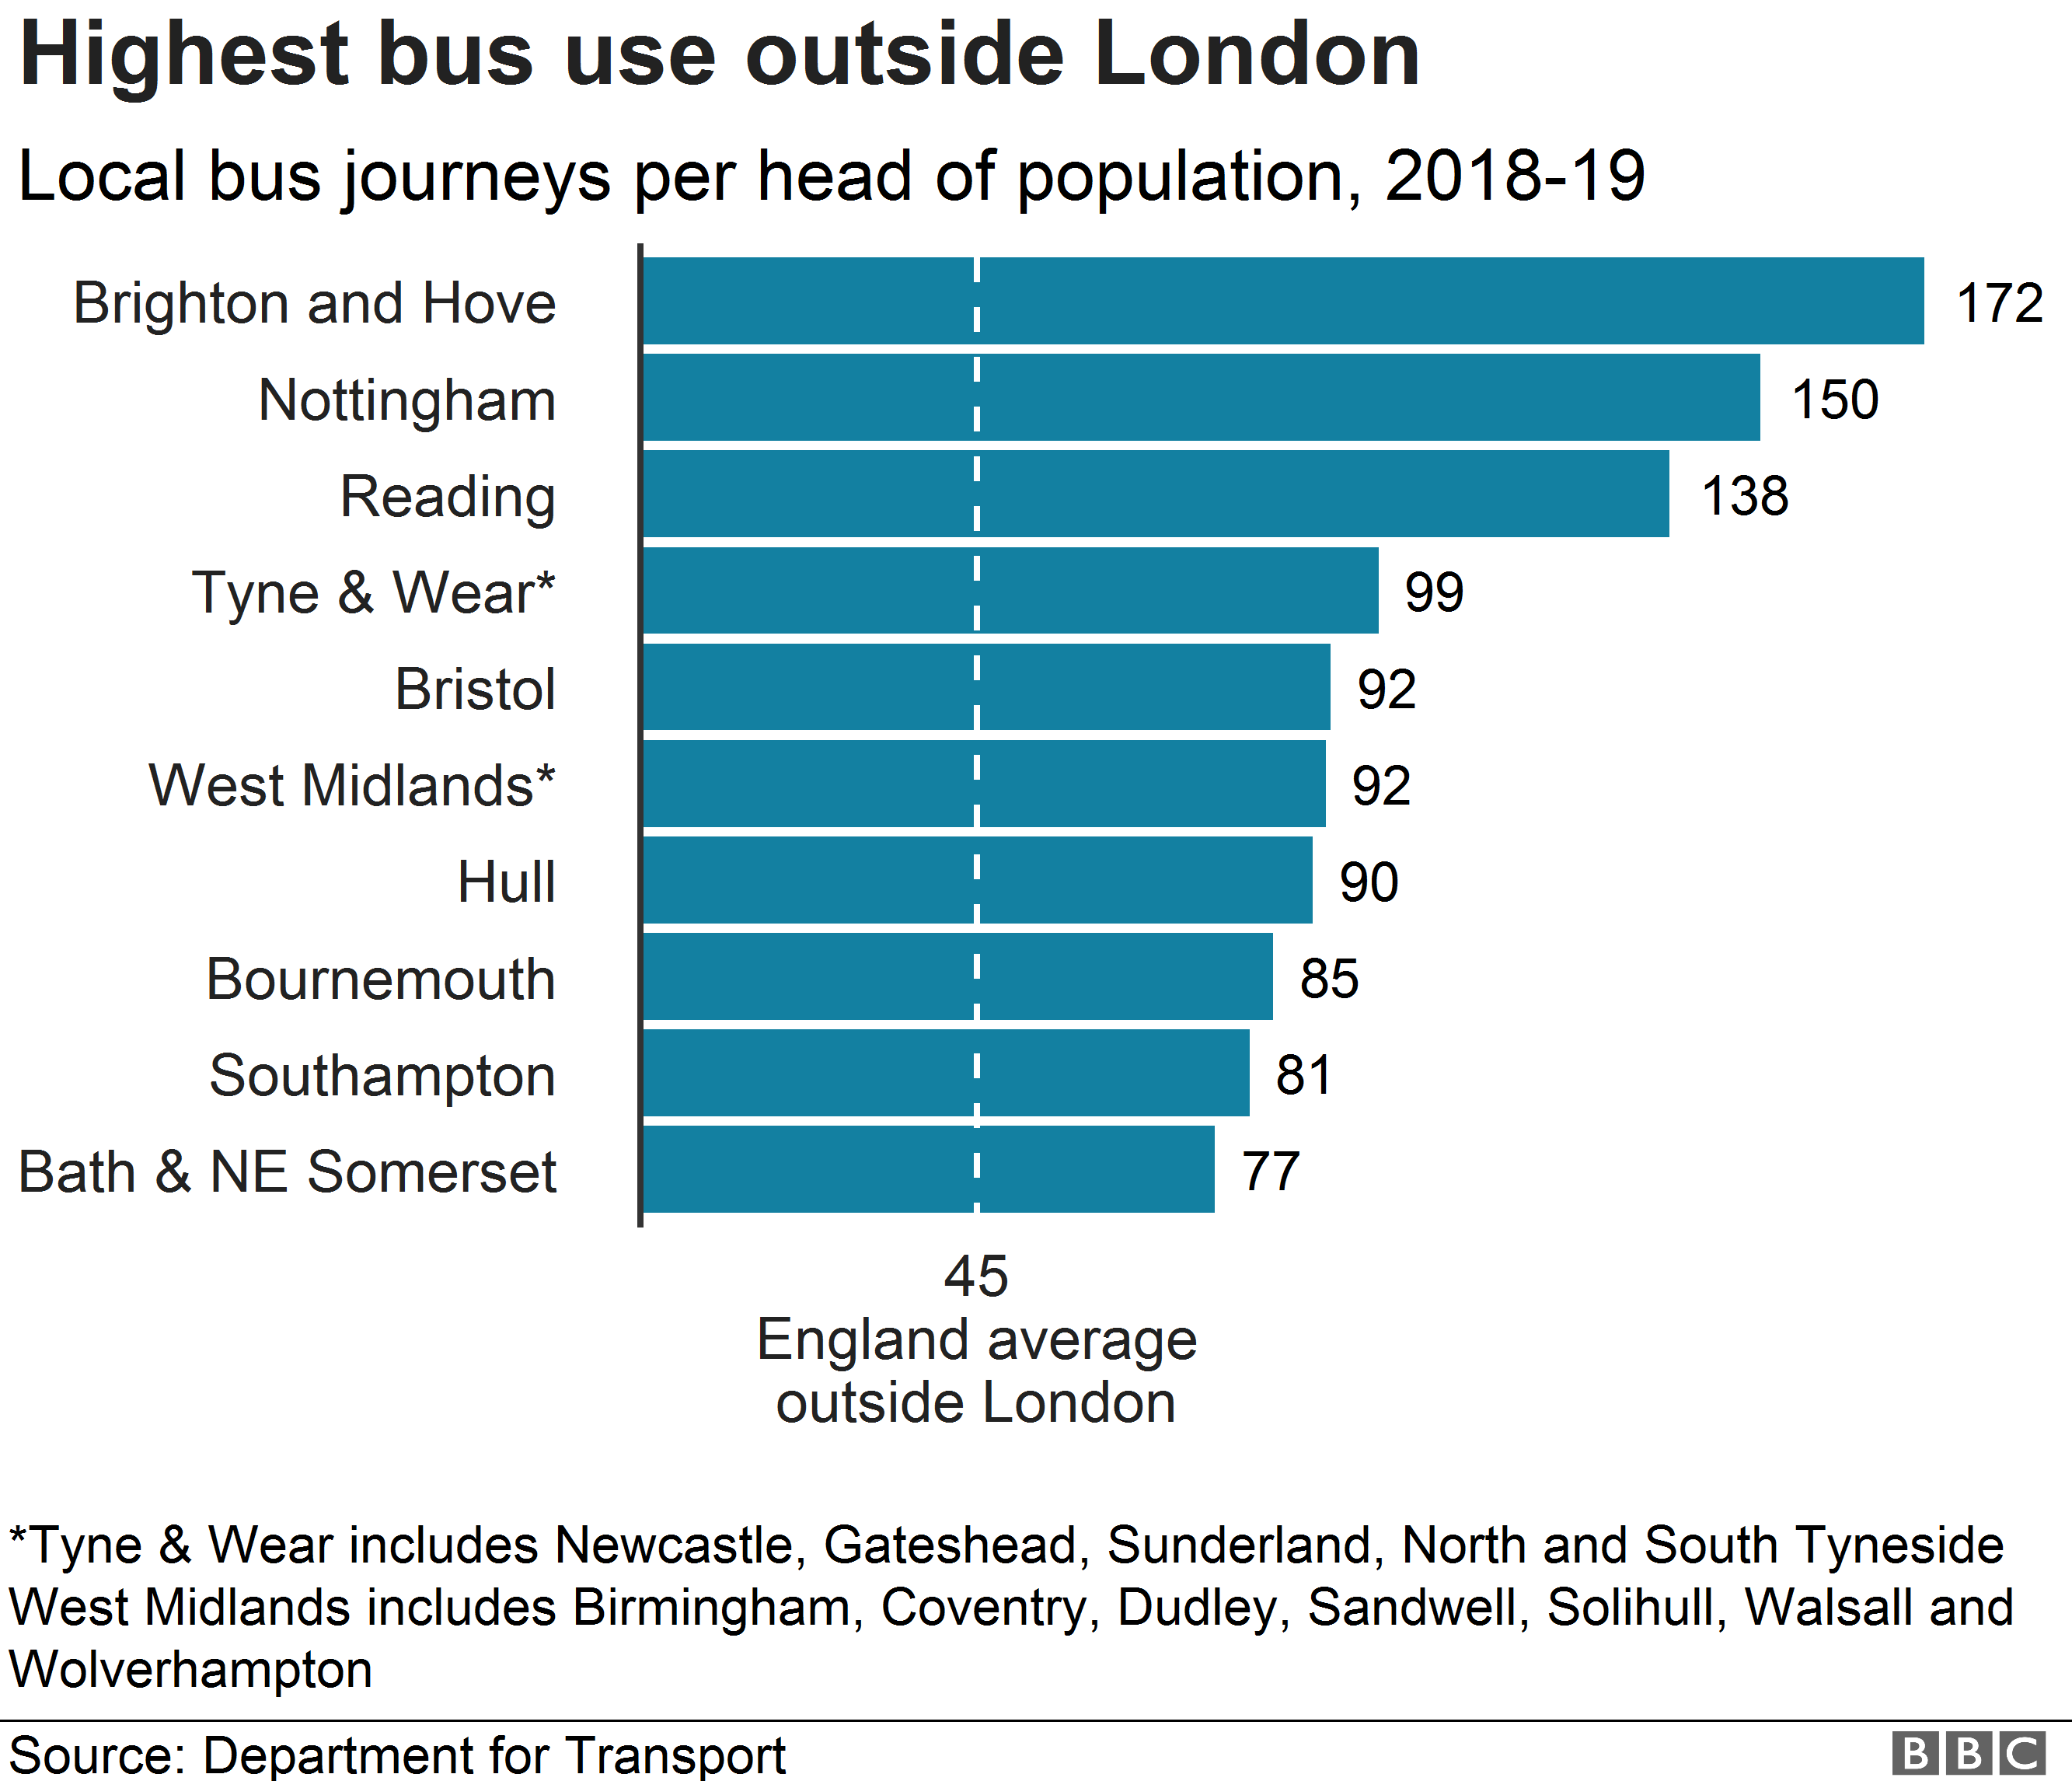 Диаграмма, показывающая самые высокие показатели использования автобусов за пределами Лондона